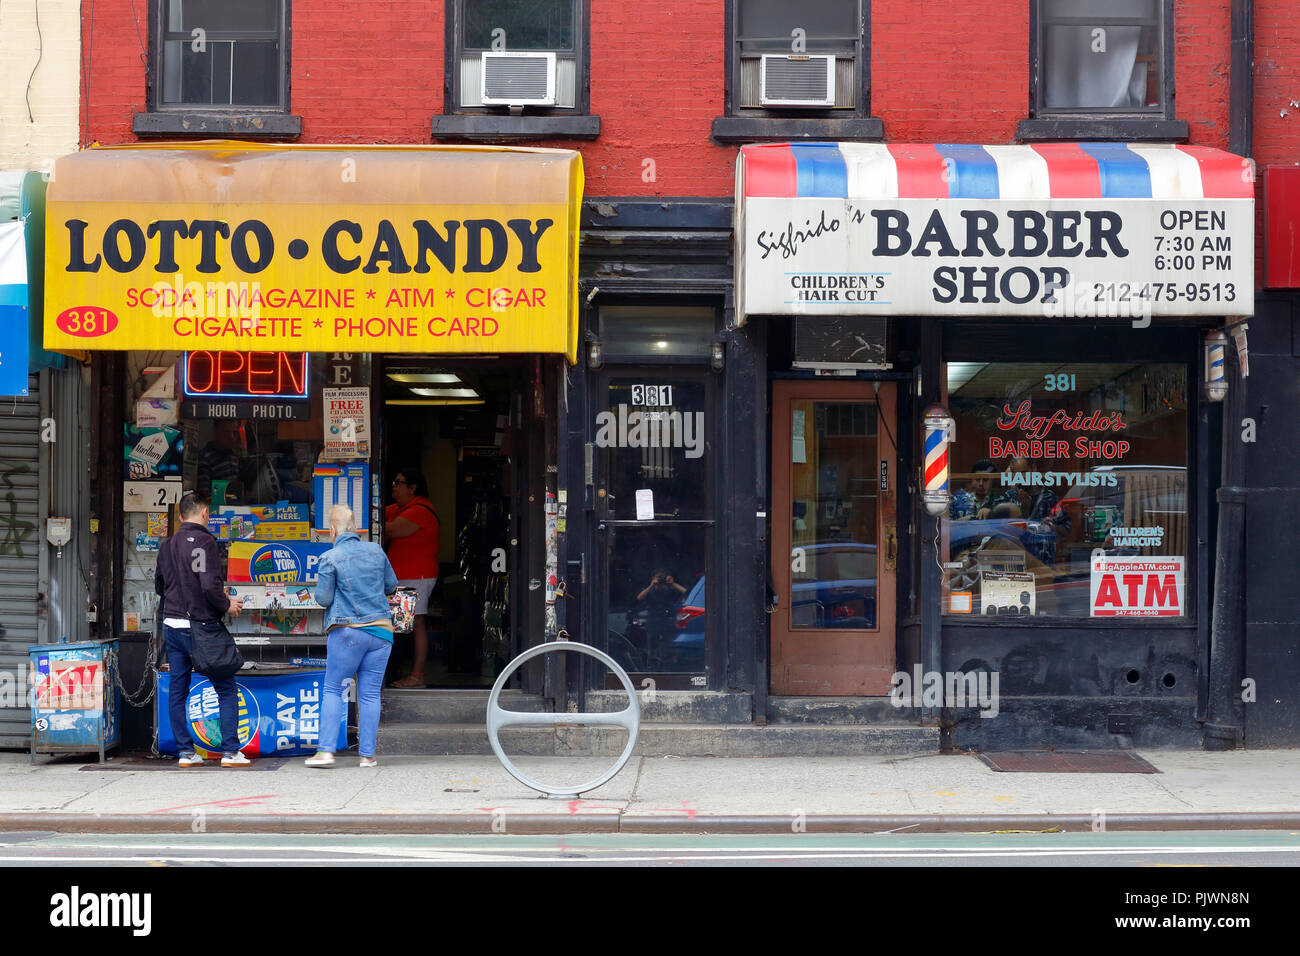 Un dépanneur, et devantures barbershop à Manhattan, New York, NY Banque D'Images